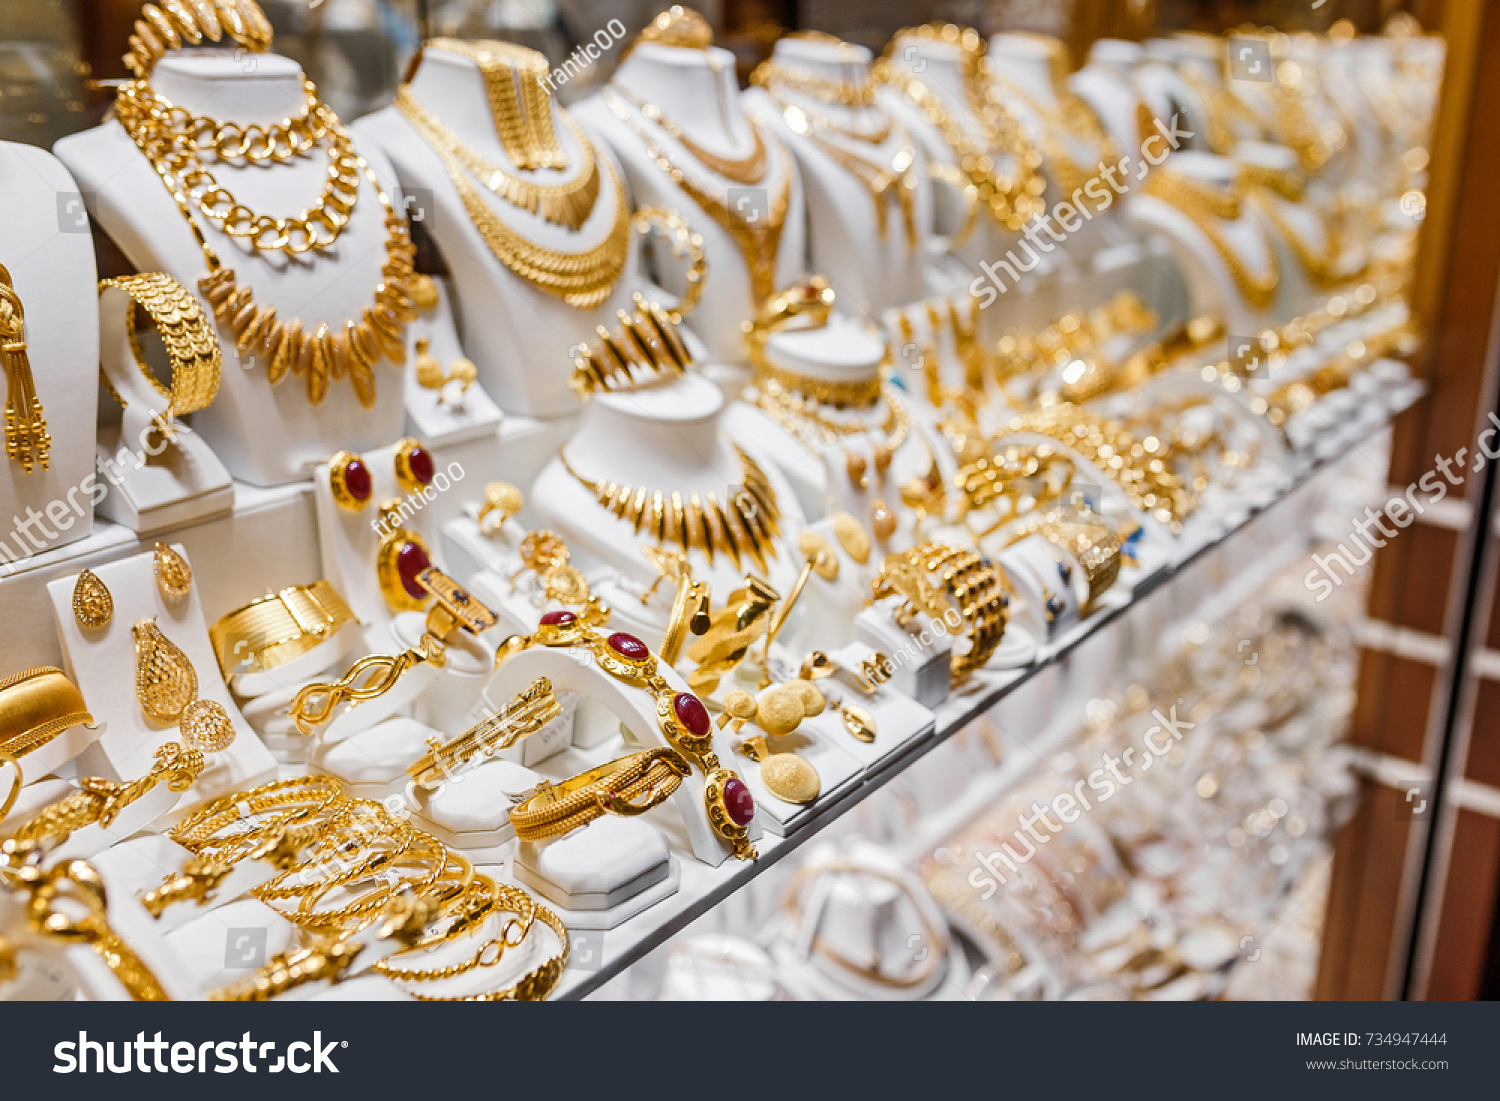 Gold bazaar Images, Stock Photos & Vectors | Shutterstock